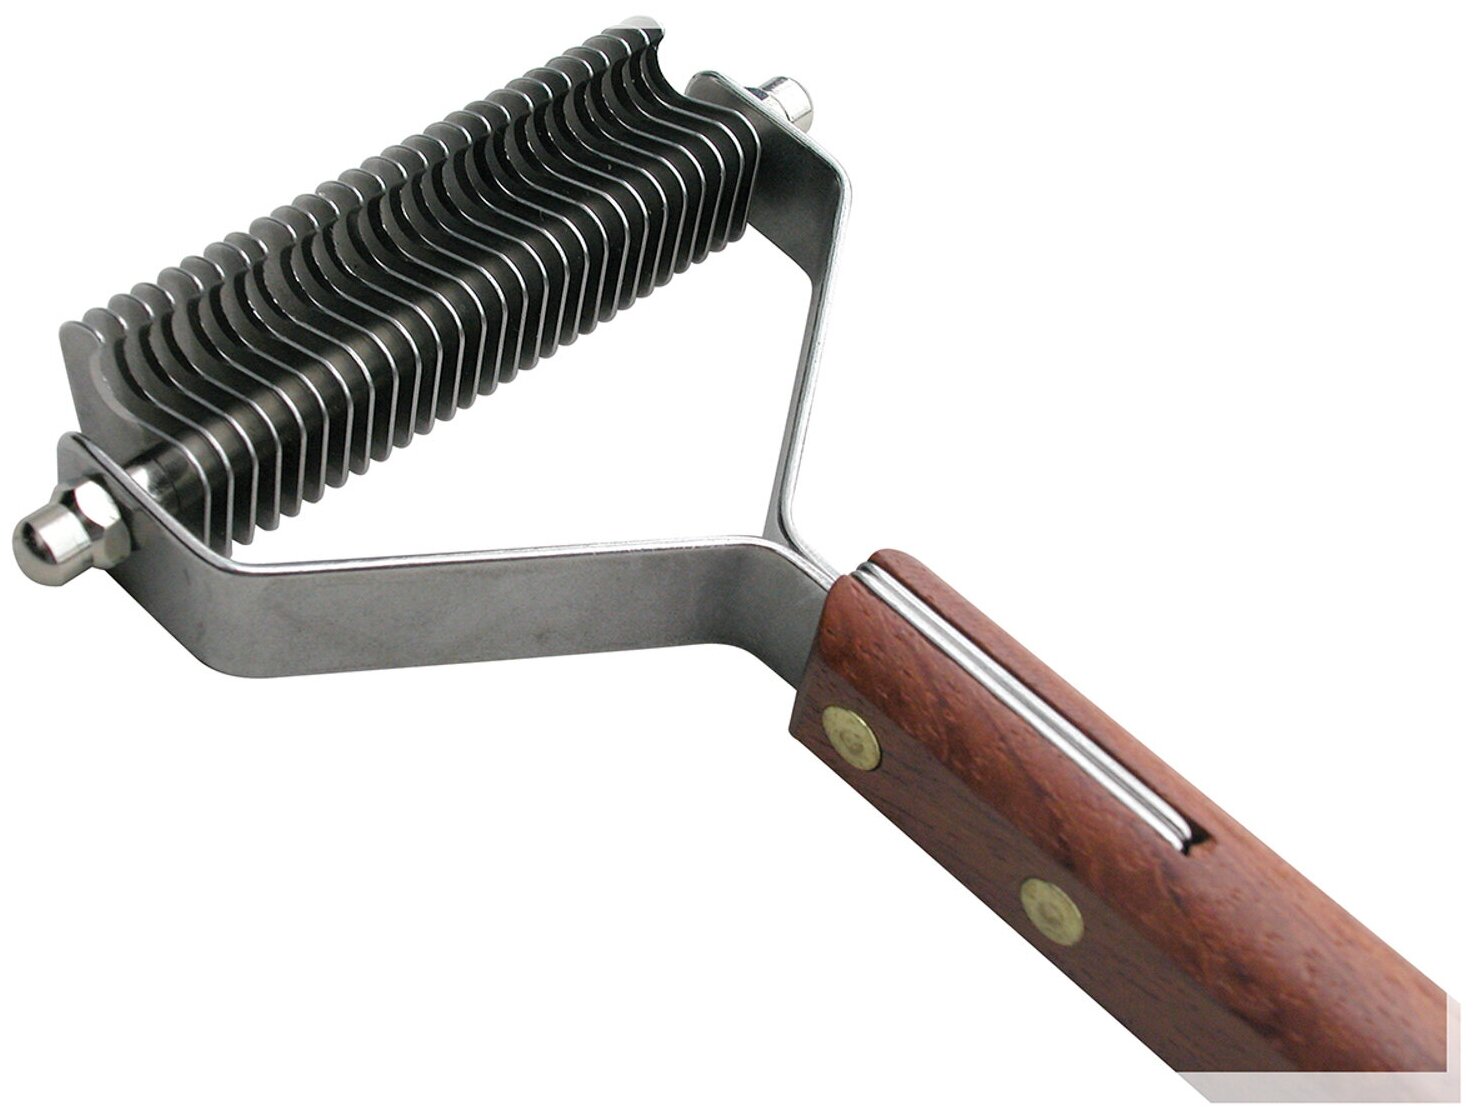 SHOW TECH стриппинг 27 ножей с деревянной ручкой для очень мягкой шерсти